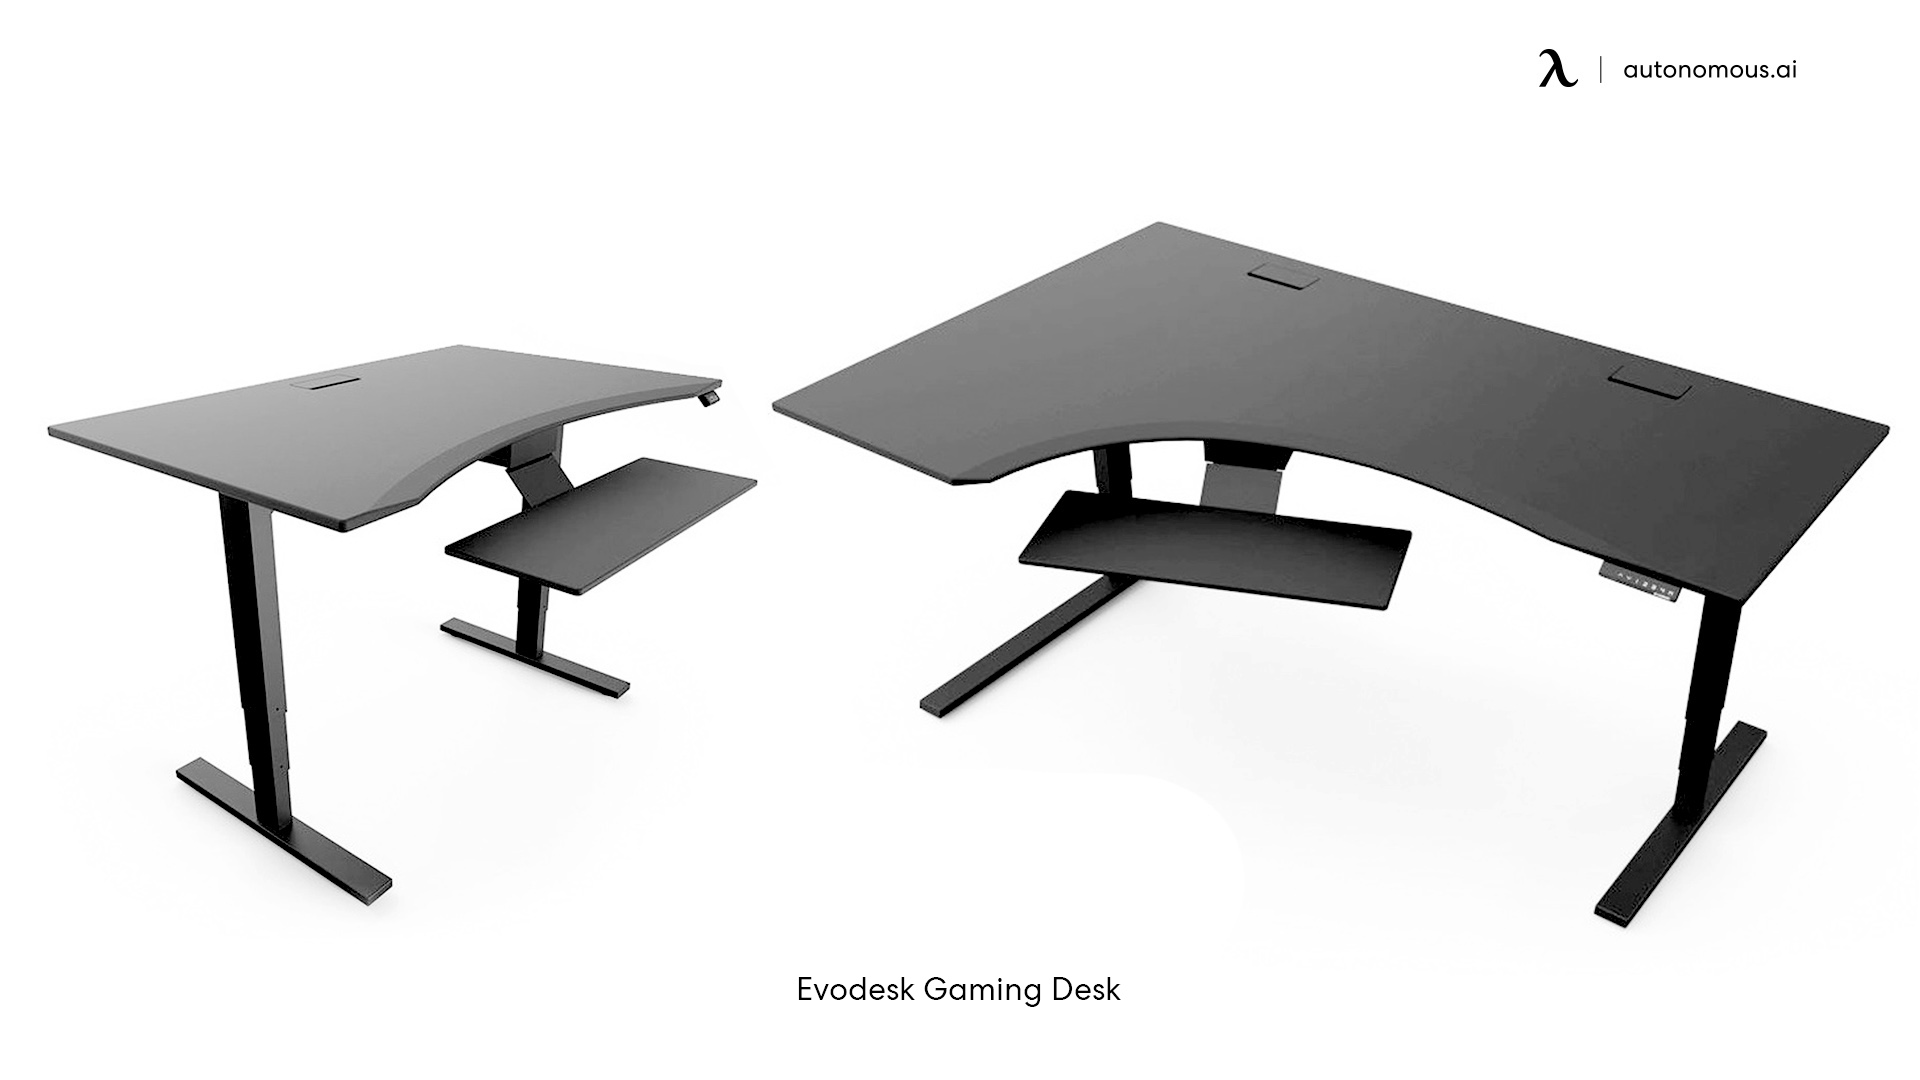 custom gaming desks by Evodesk